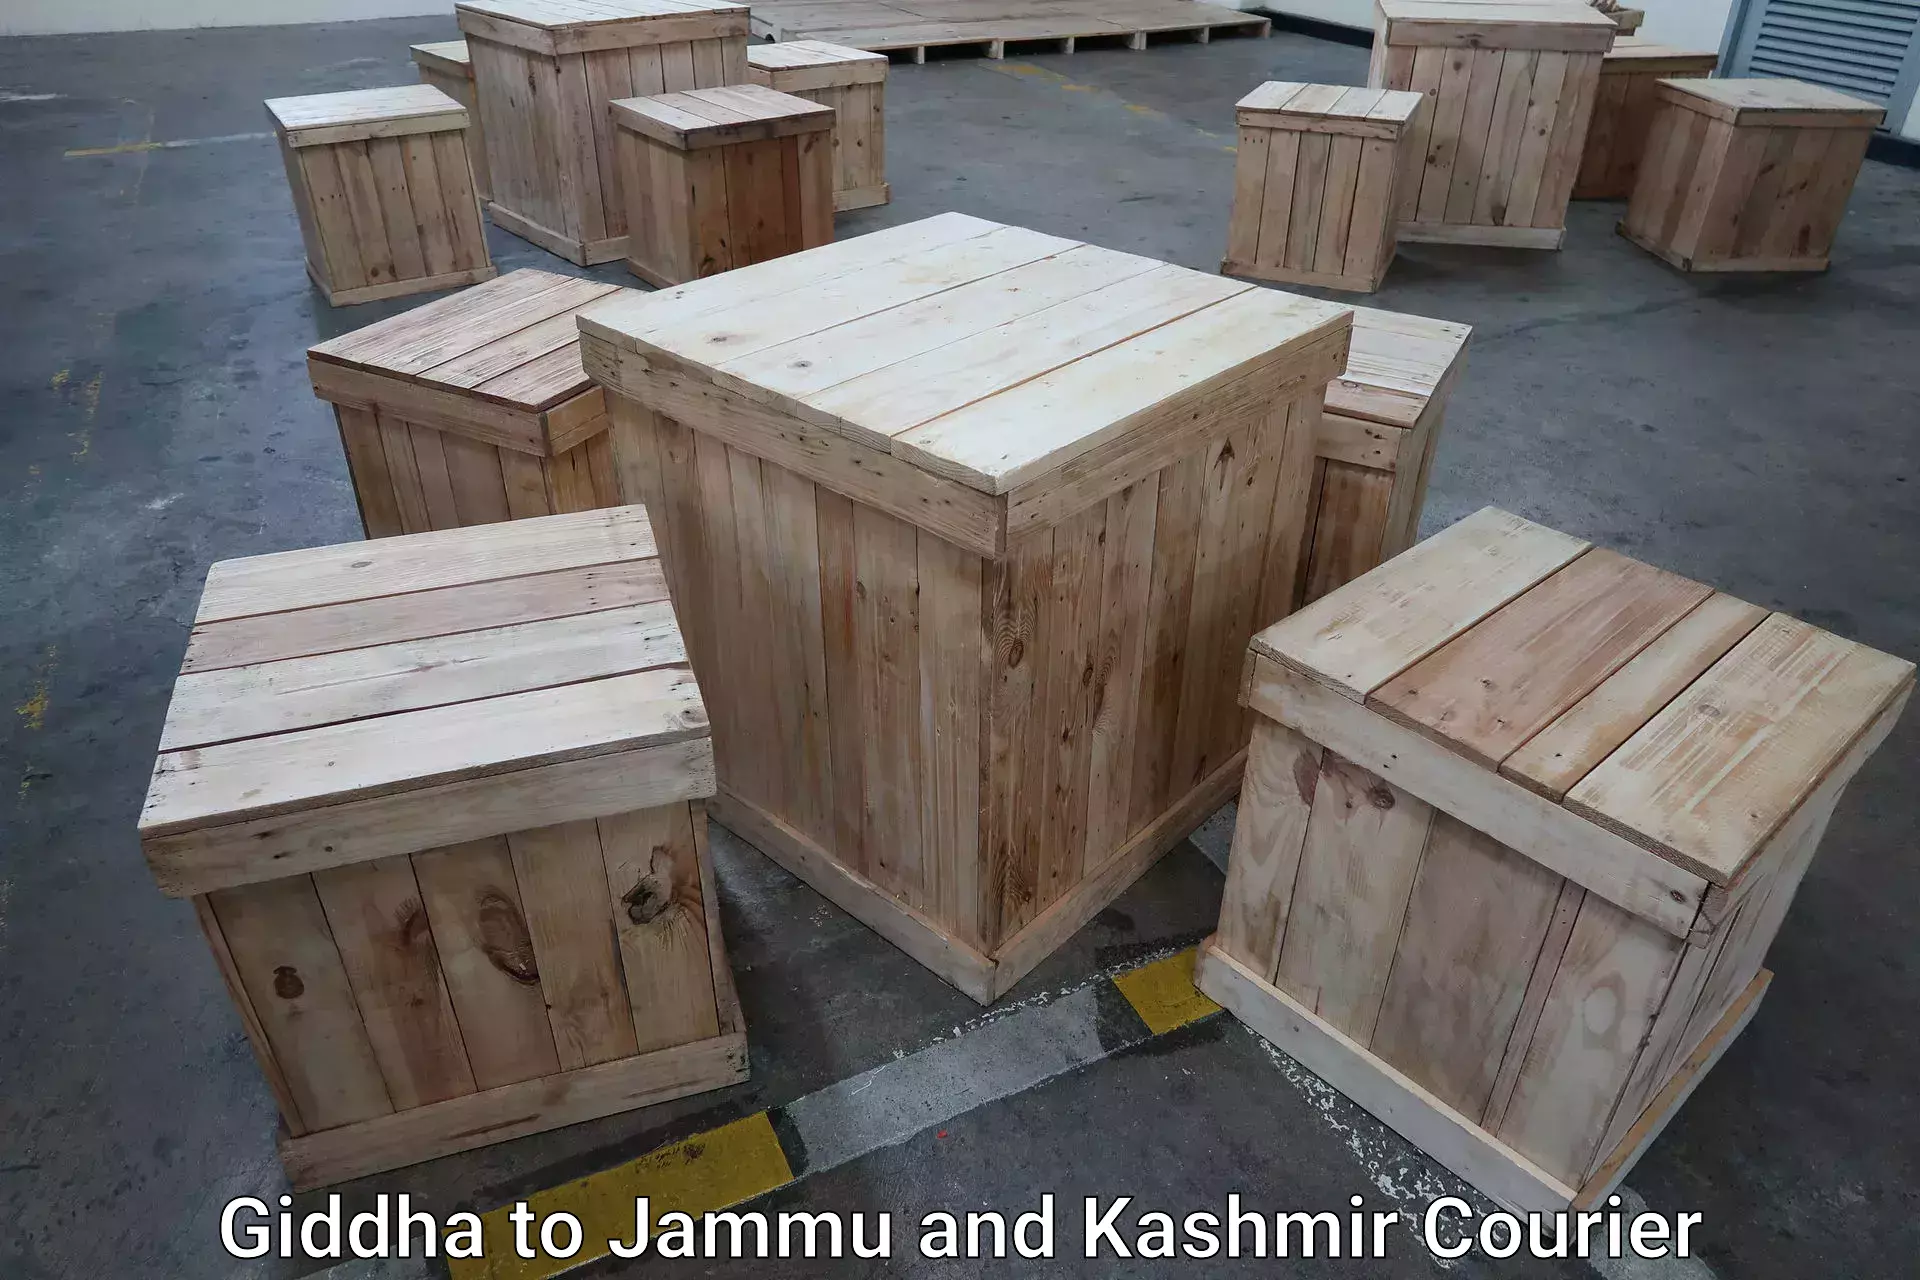 Luggage shipment strategy Giddha to Jammu and Kashmir